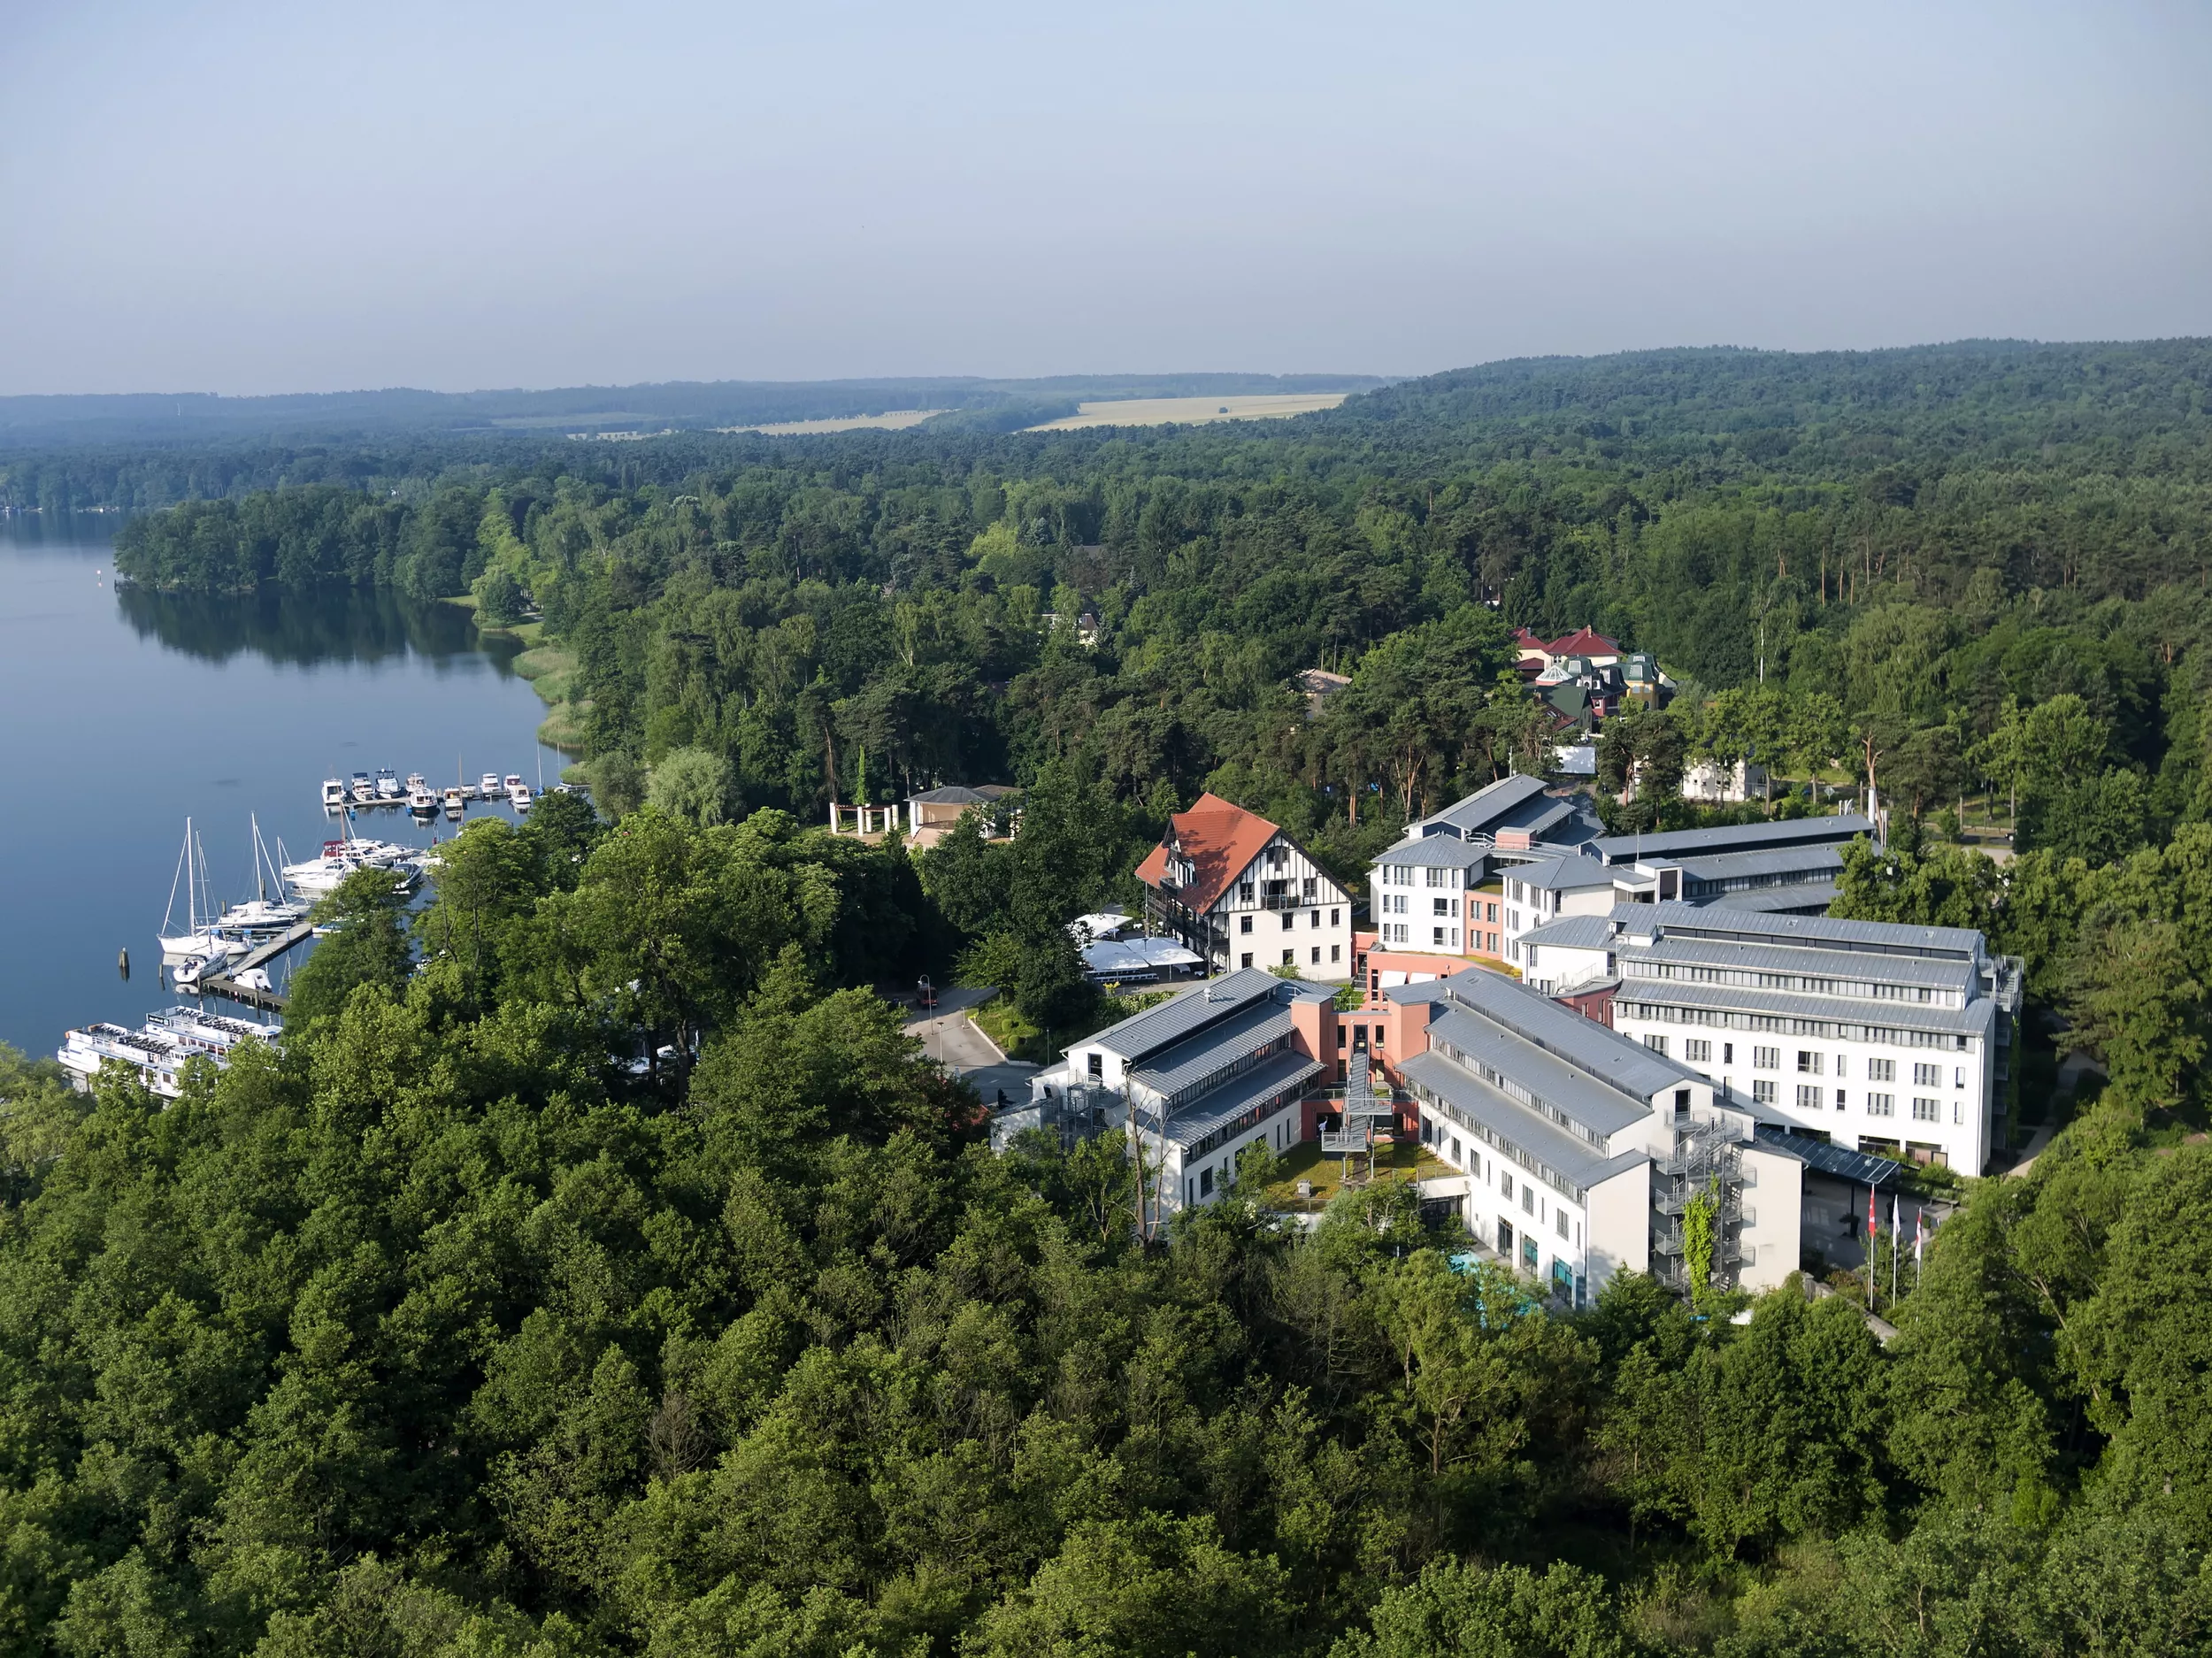 Aufnahme von der Luft auf Hotel, links beginnt der See mit Anliegestelle für Schiffe und Boote. Hotel von grünen Bäumen umgeben